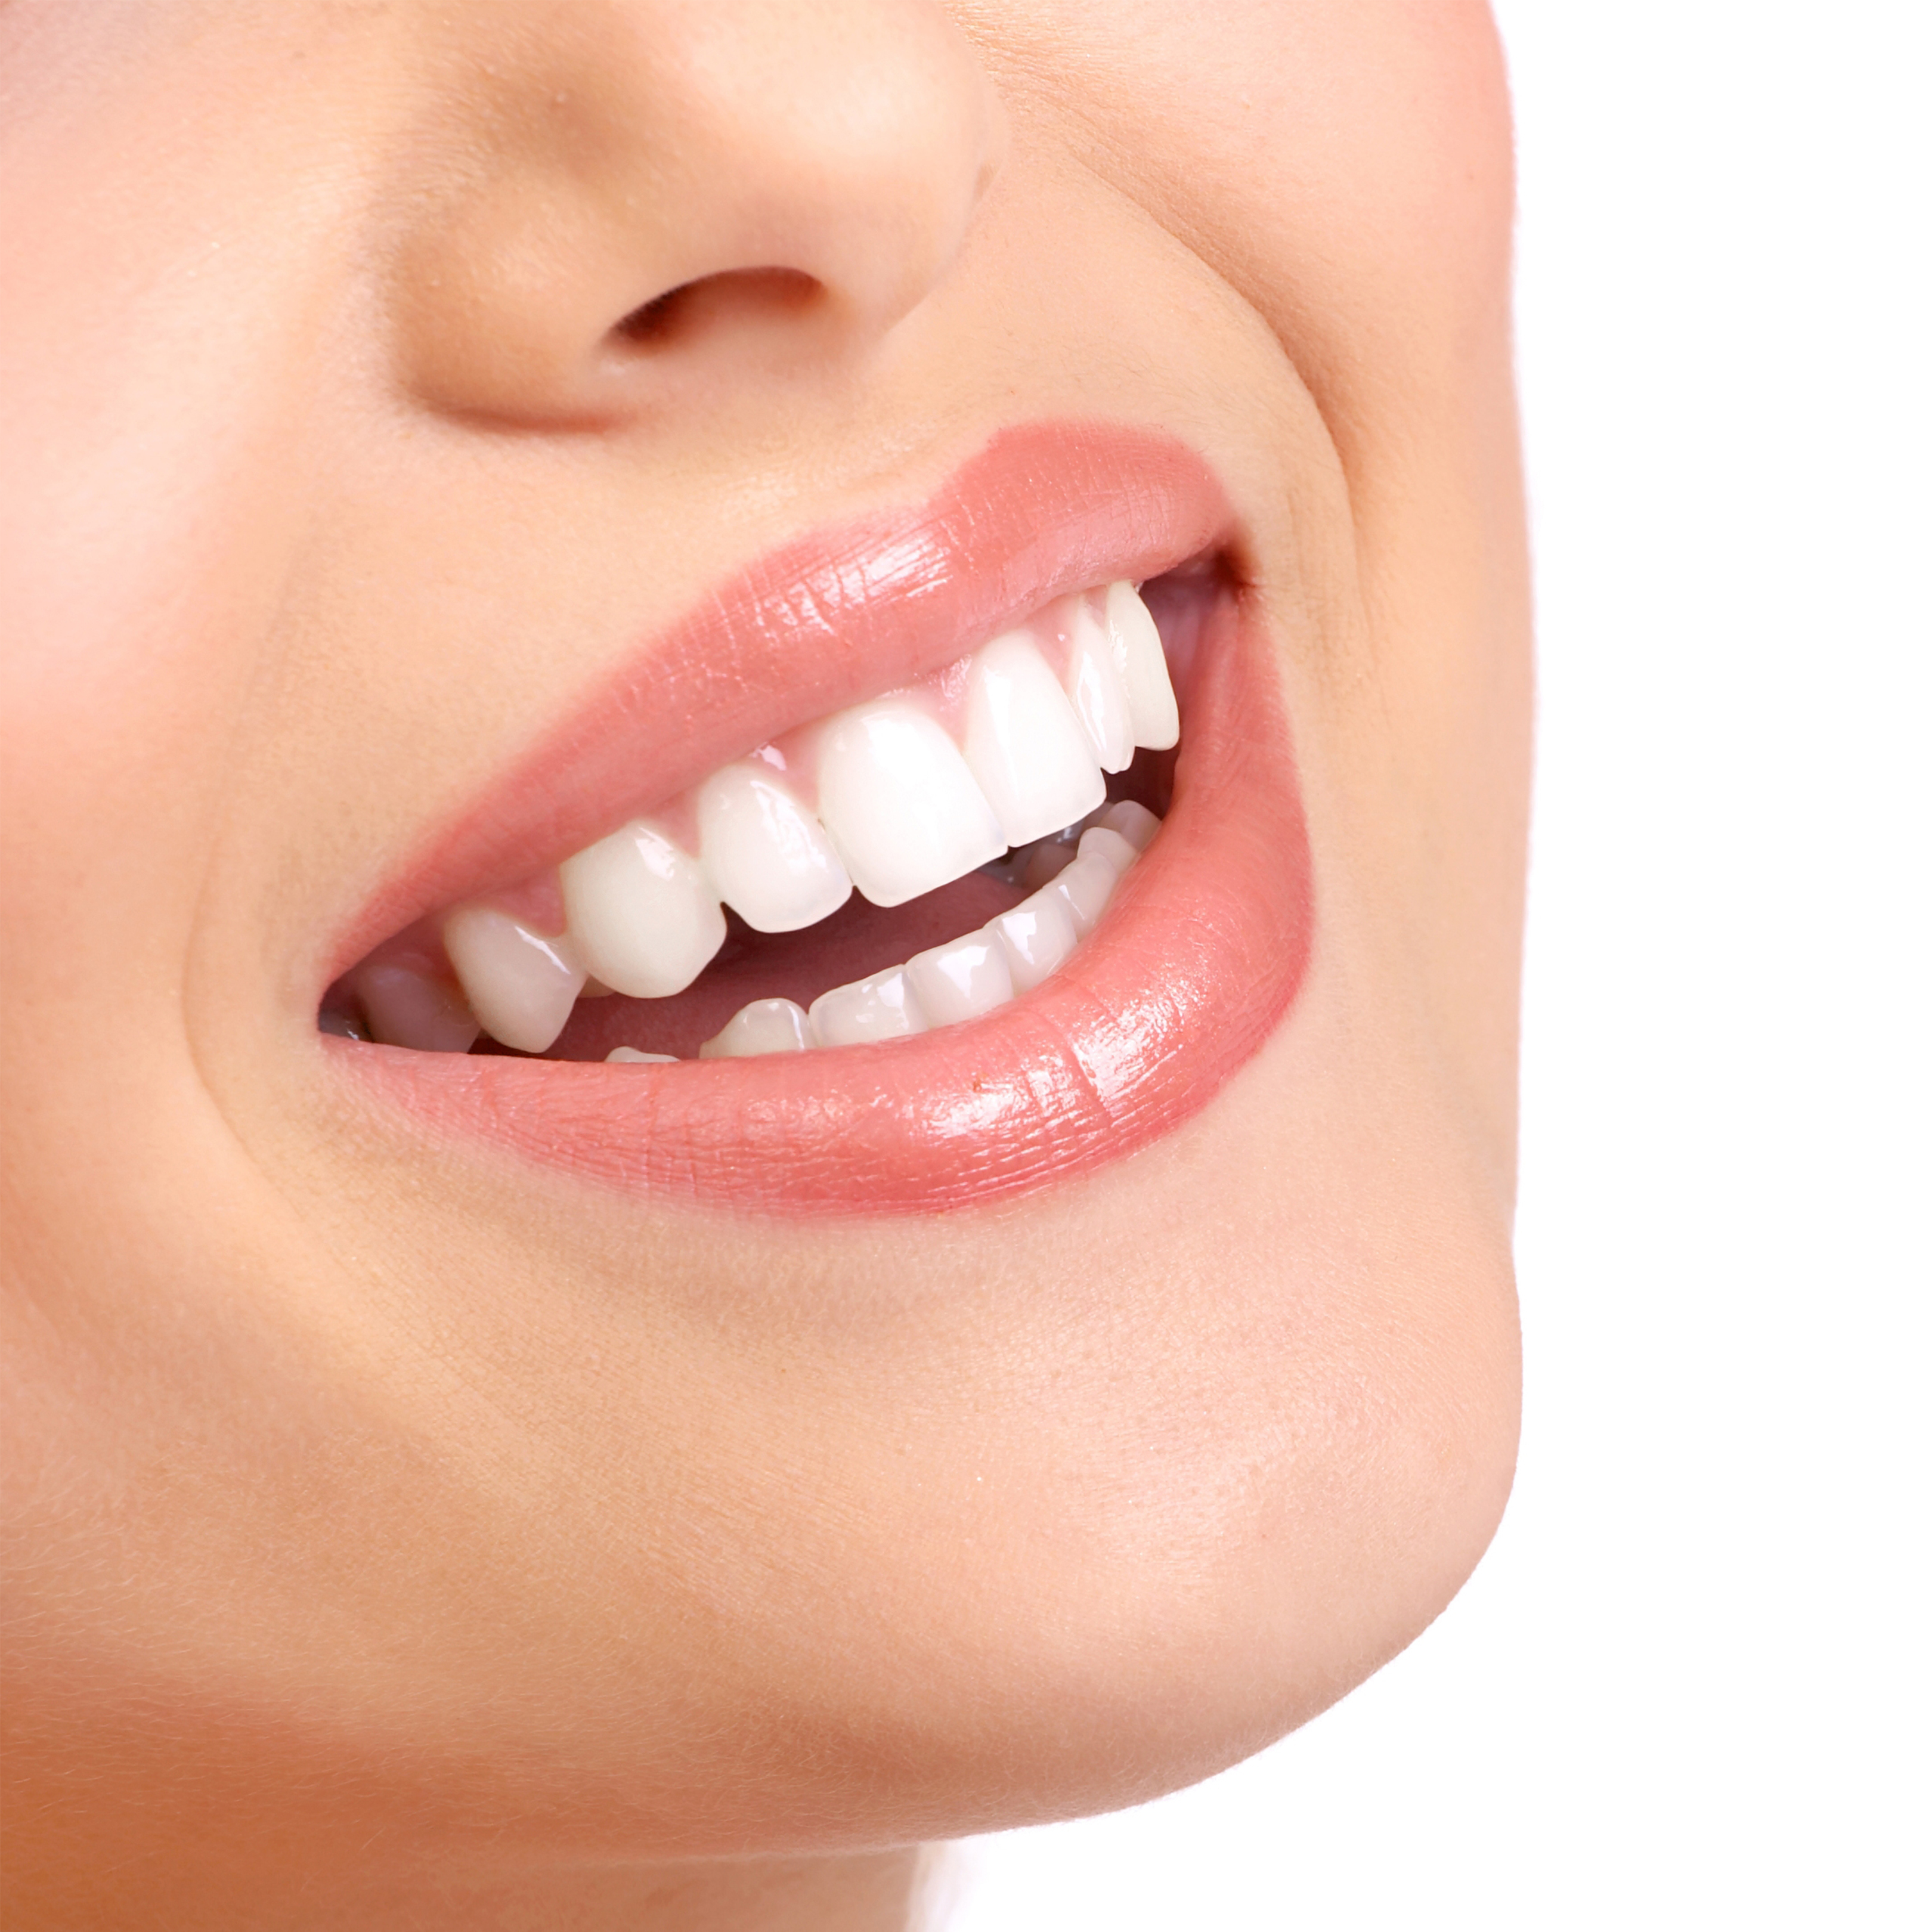 Отбеливание зубов в стоматологии